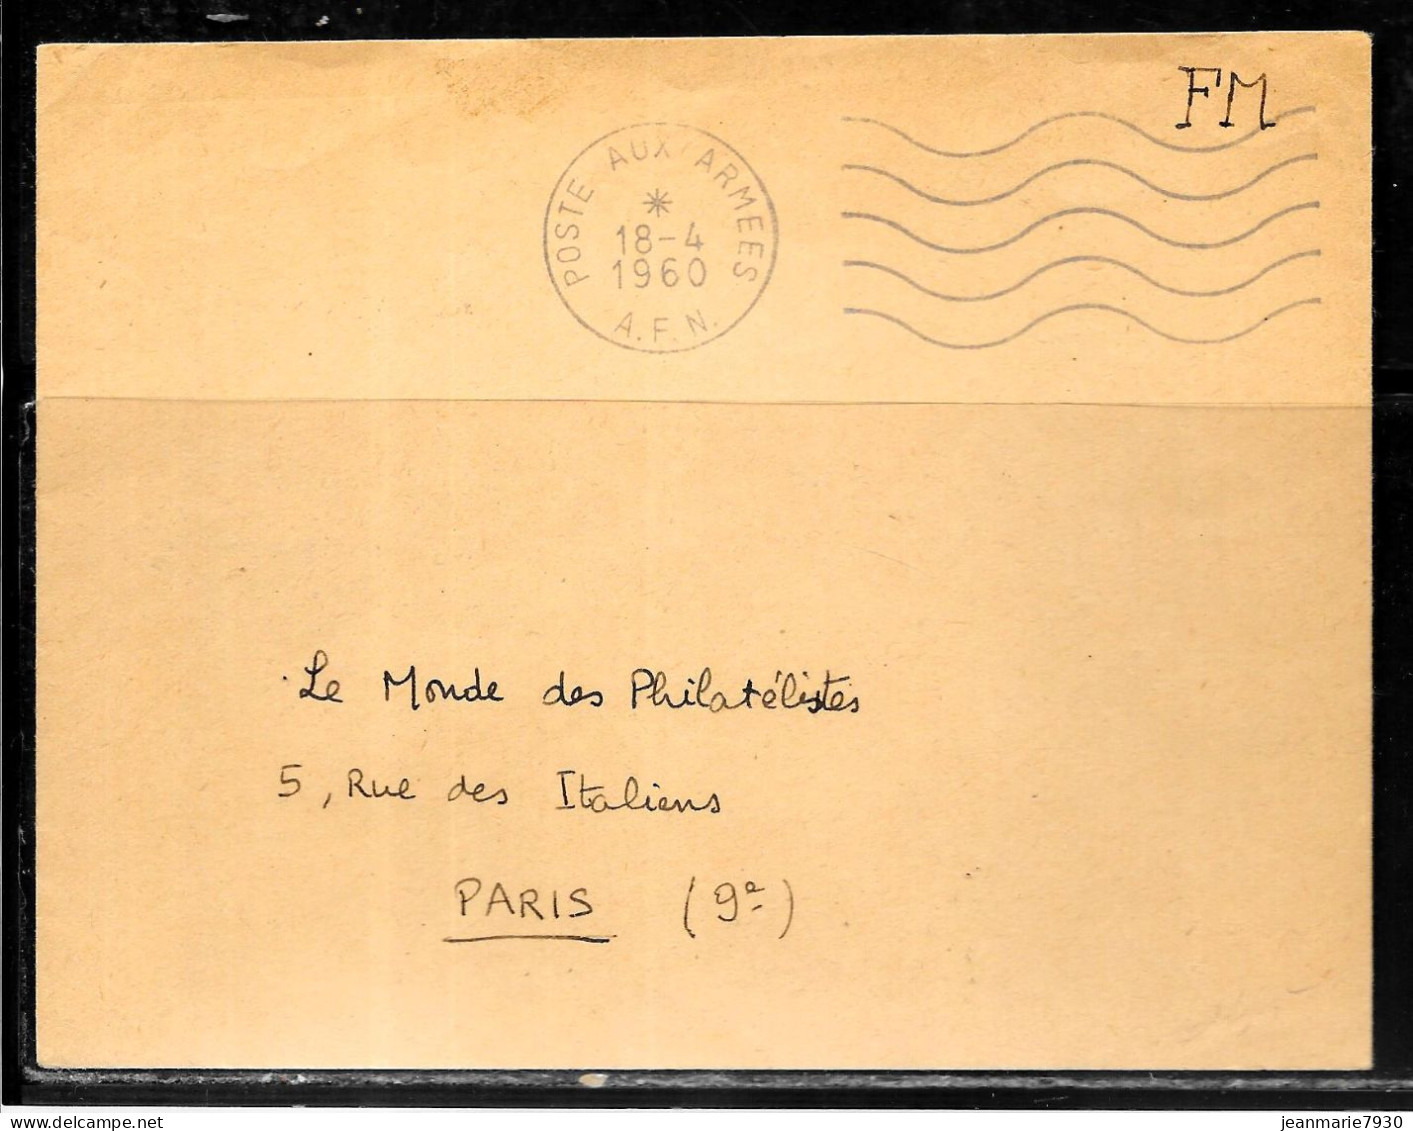 P273 - LETTRE EN FRANCHISE POSTE AUX ARMEES A.F.N. DU 18/04/60 - Lettres & Documents